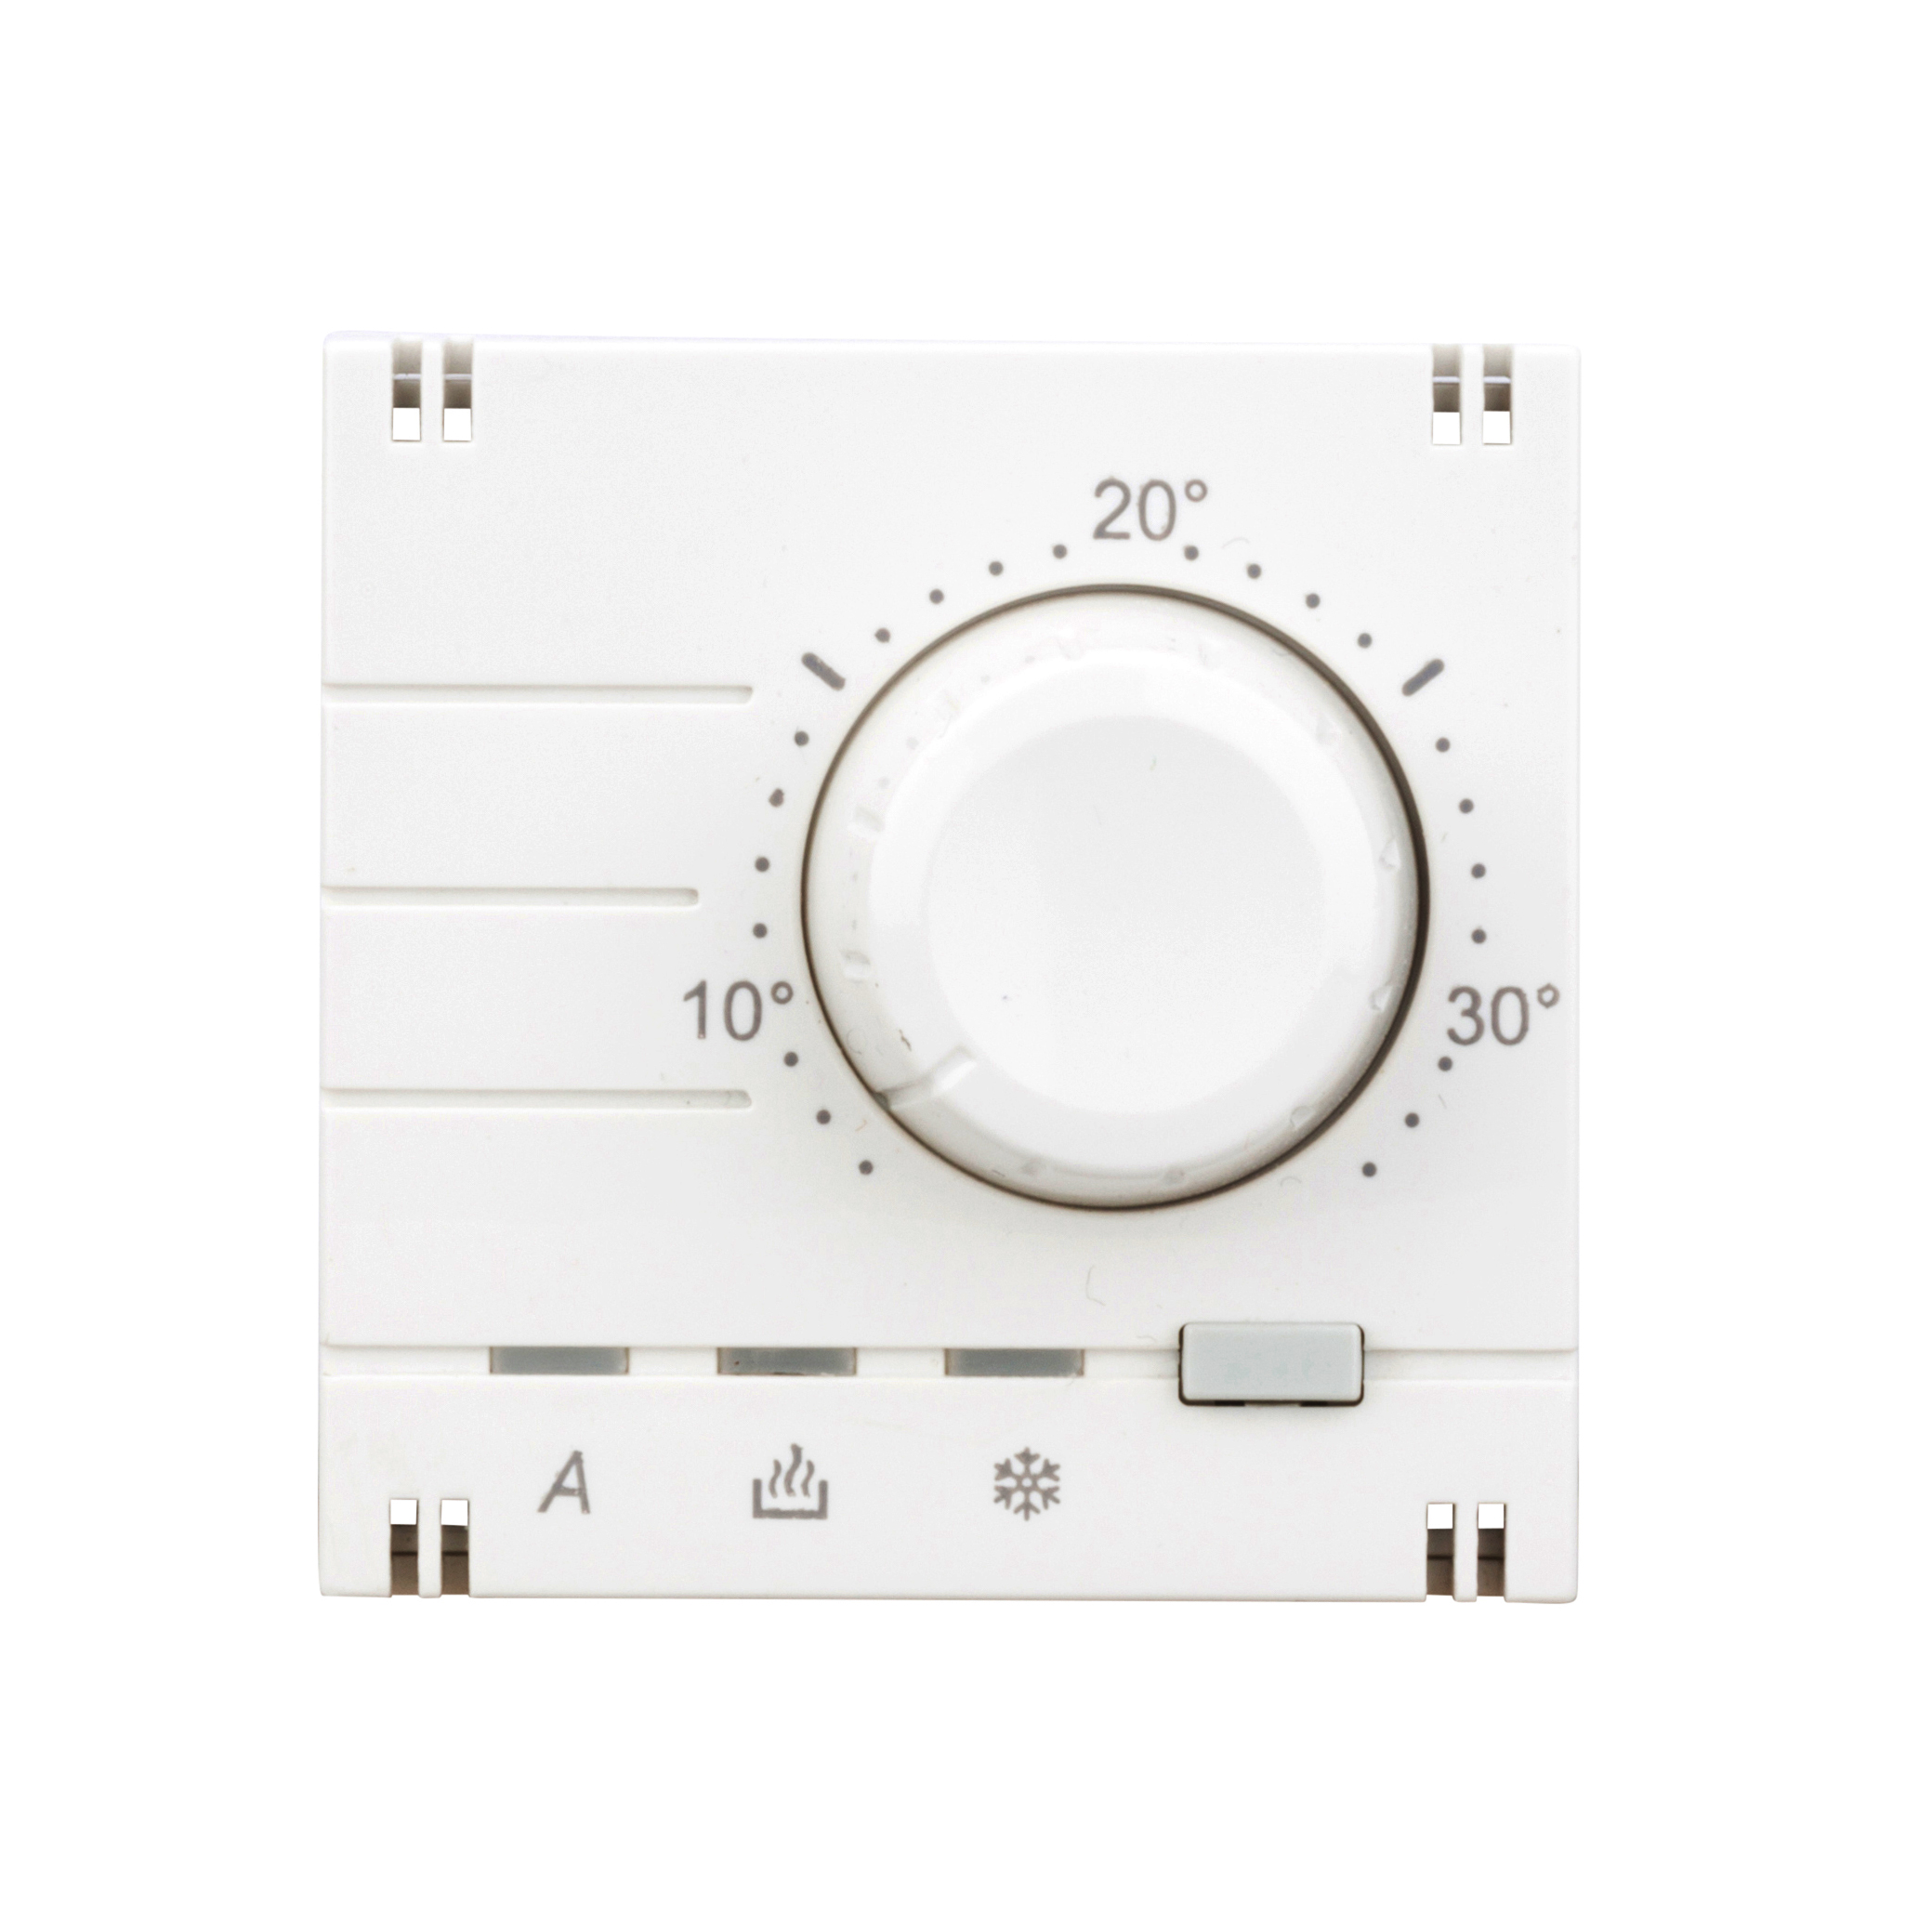 Foto: Analog Thermostat Aufsatz, Heizung/Kühlung, weiß (c) Schrack